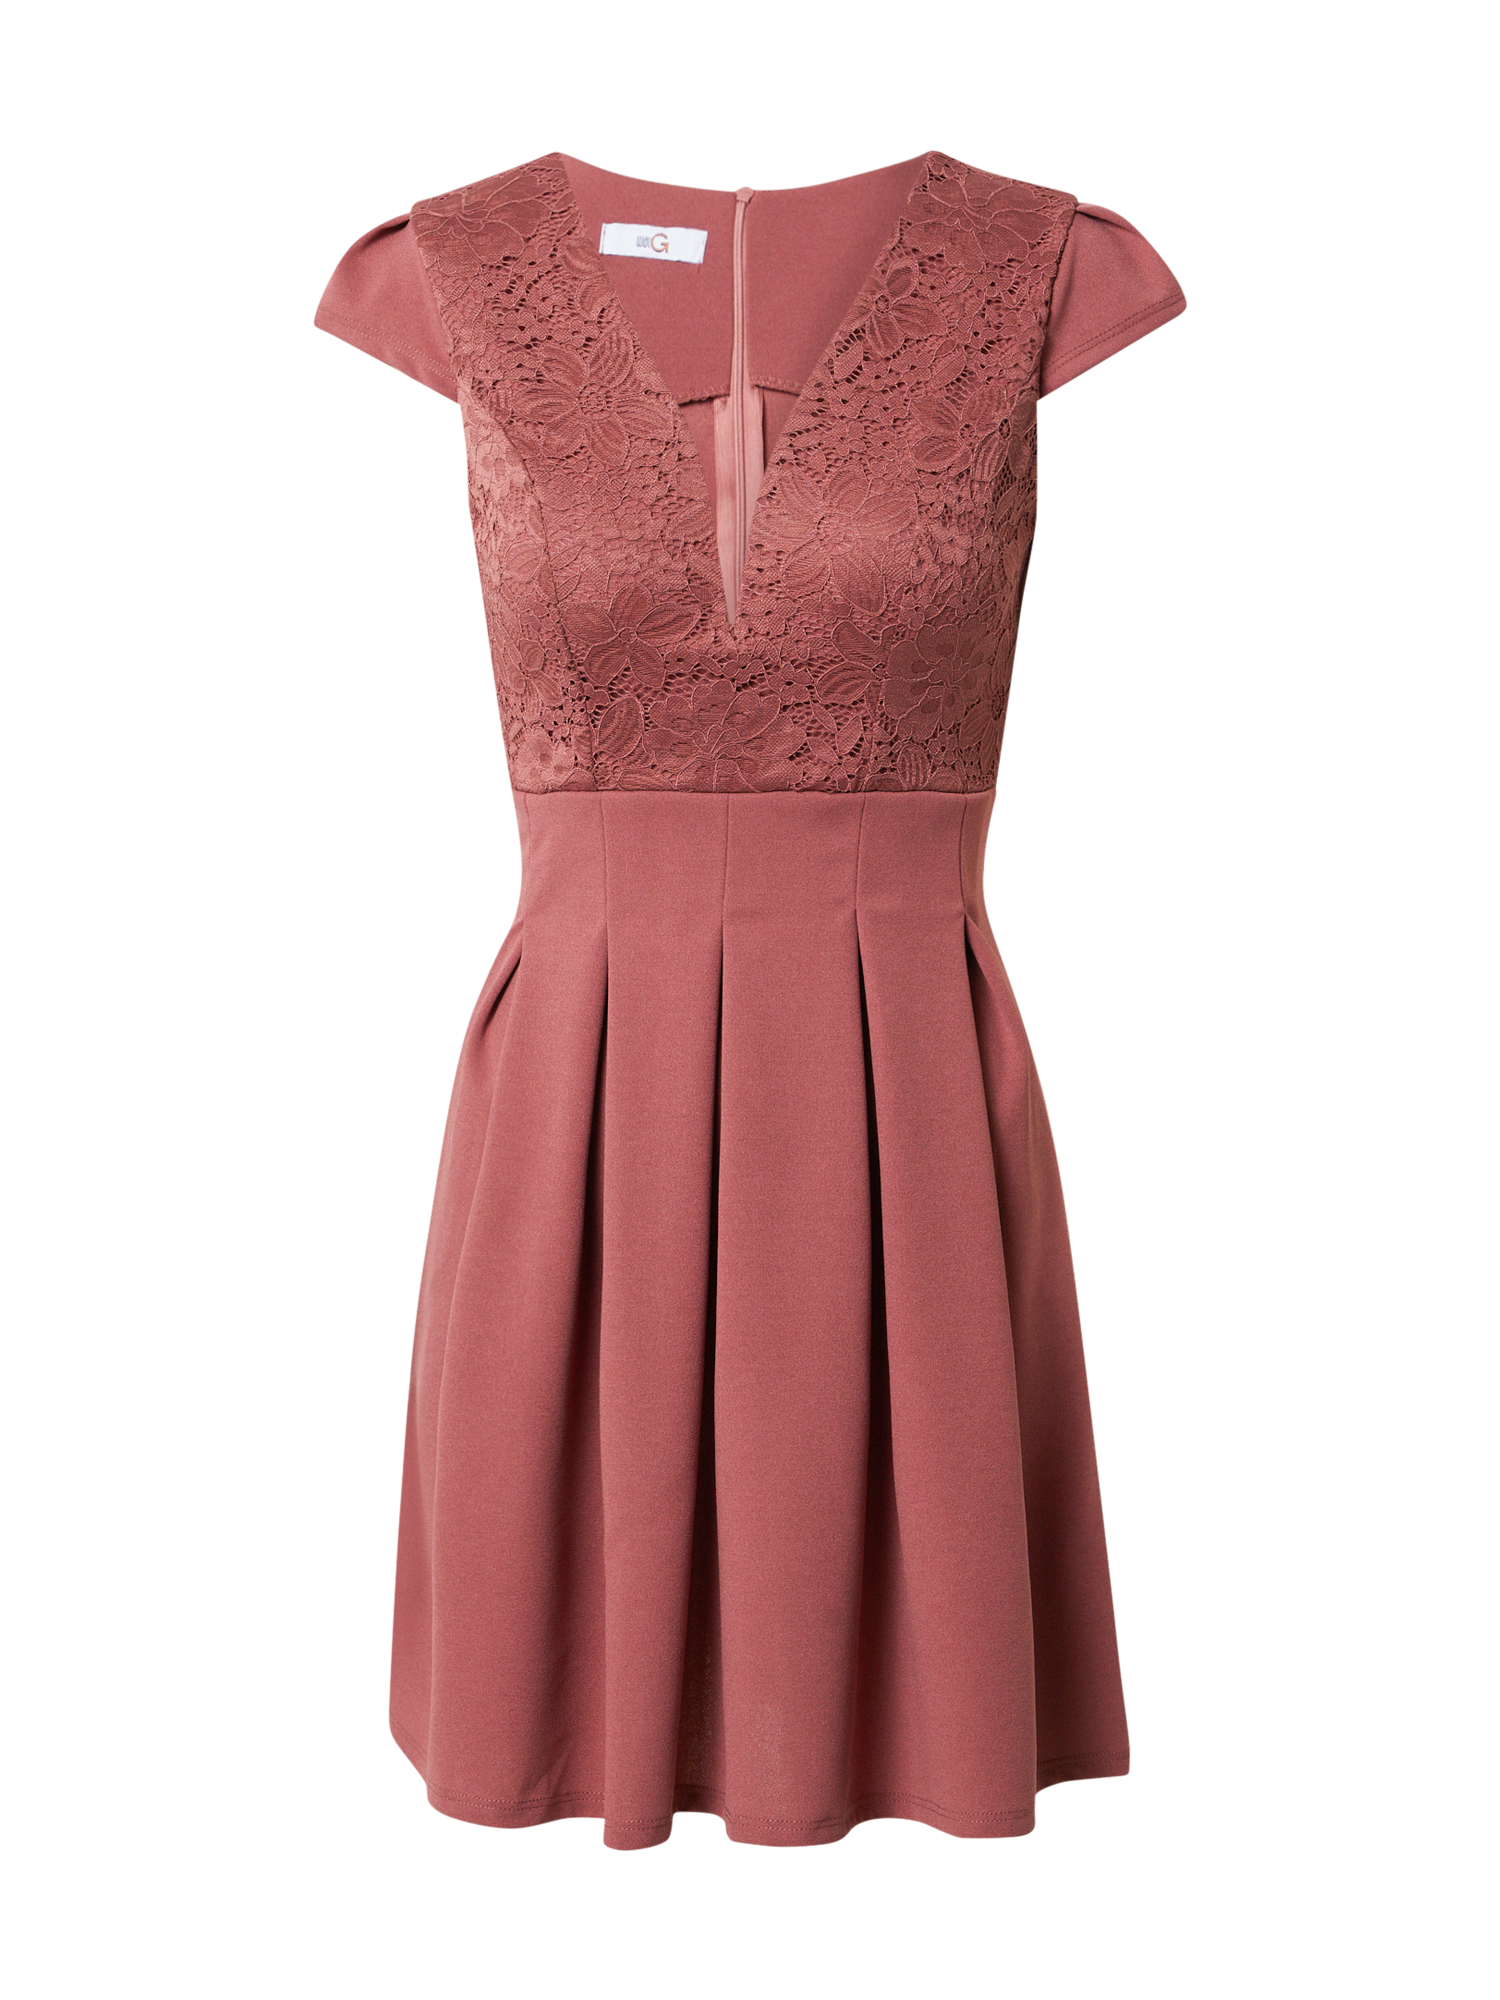 Odzież Sukienki WAL G. Sukienka koktajlowa VIMMY w kolorze Rdzawoczerwonym 